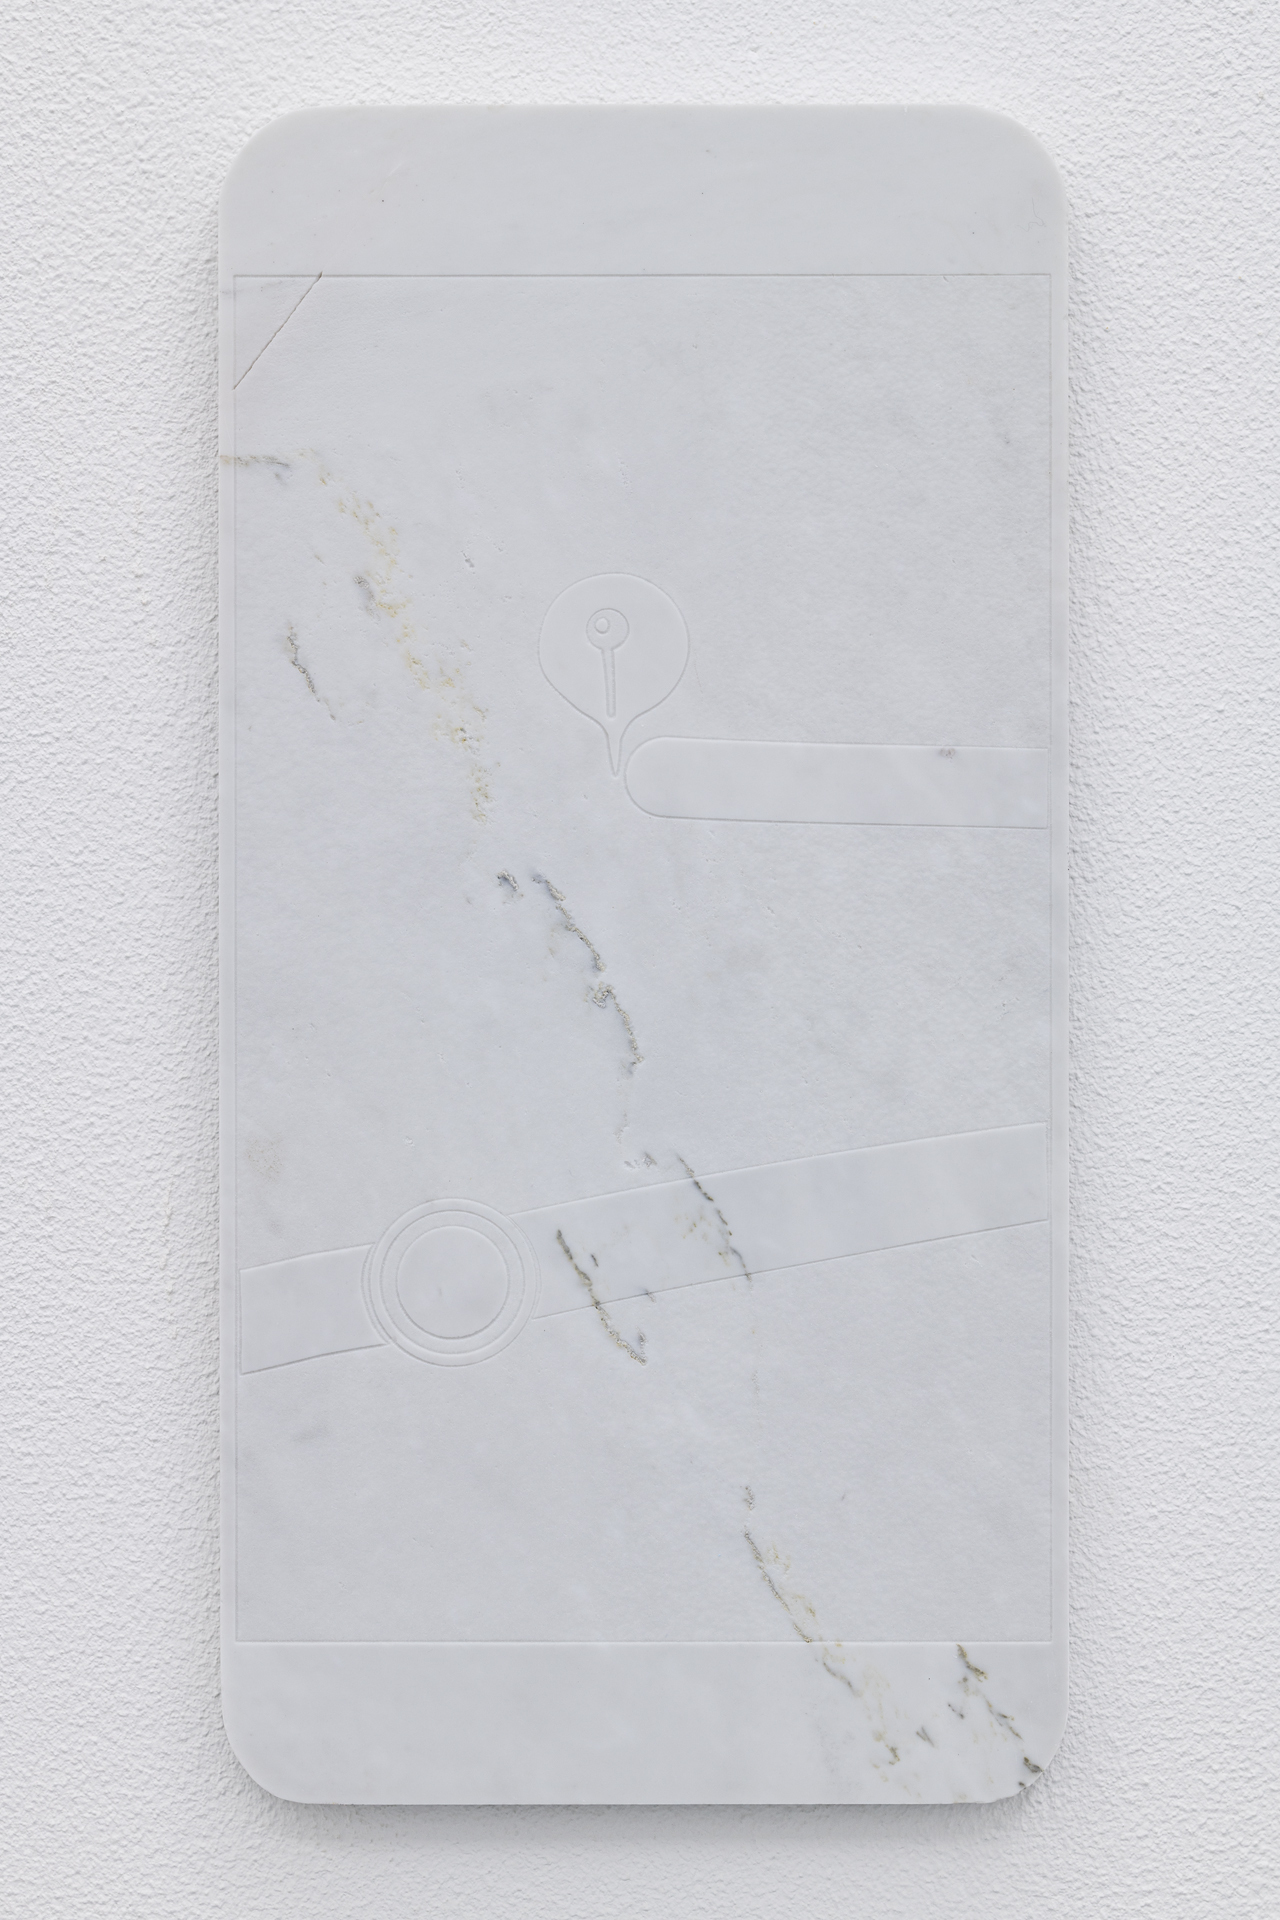 Lukas Liese, On Route nr. 6, 2021, Carrara Marble, 30cm x 60cm x 2cm.